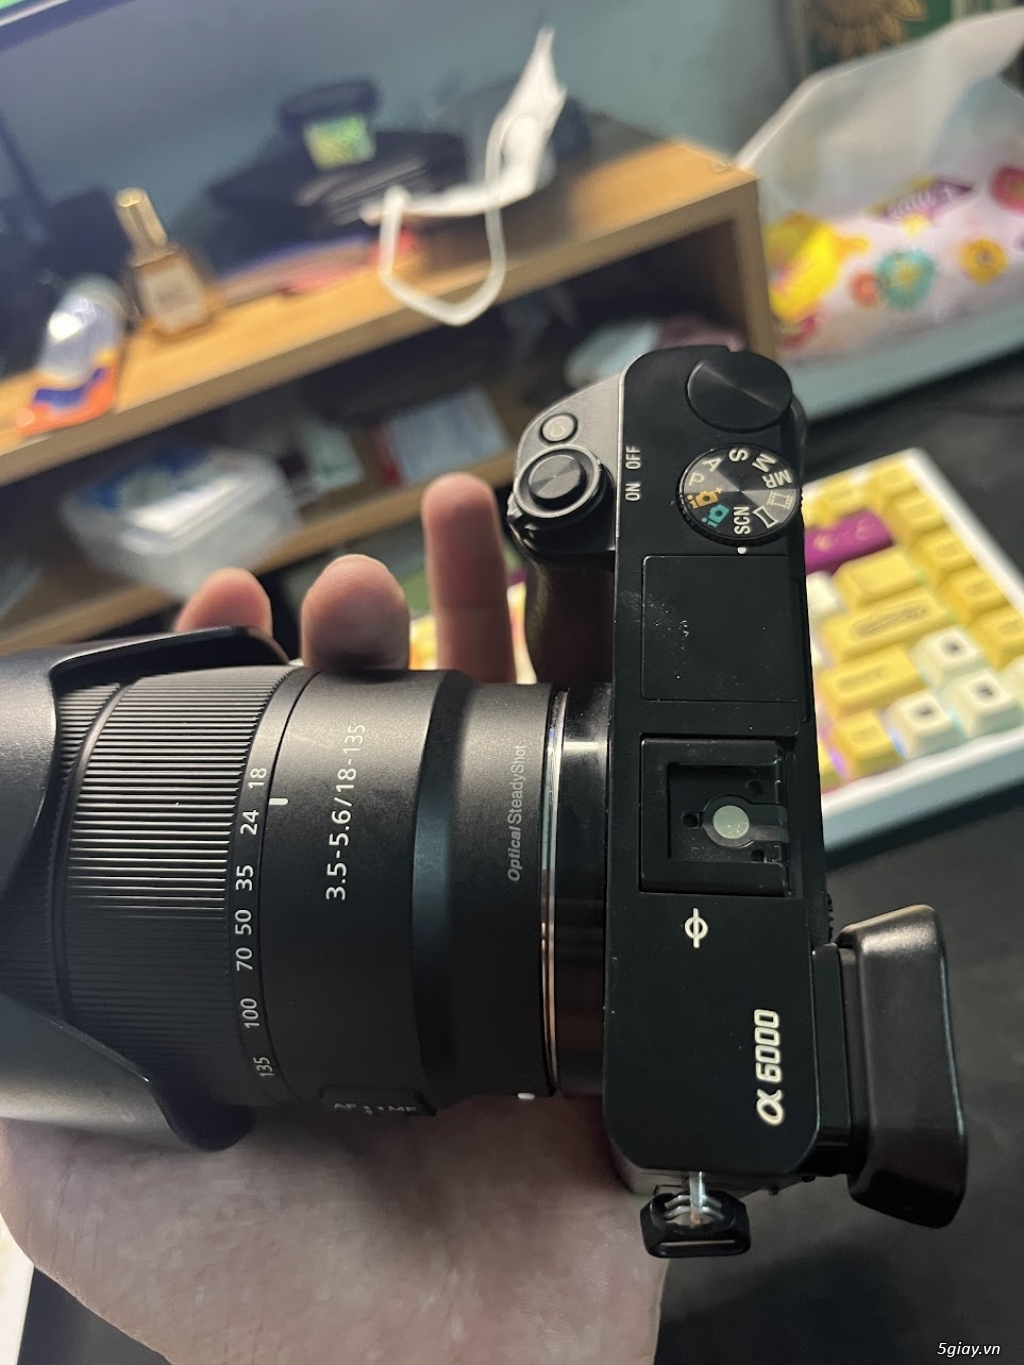 Cần bán bộ máy ảnh a6000 và lens 18-135 f3.5-5.6 - 4